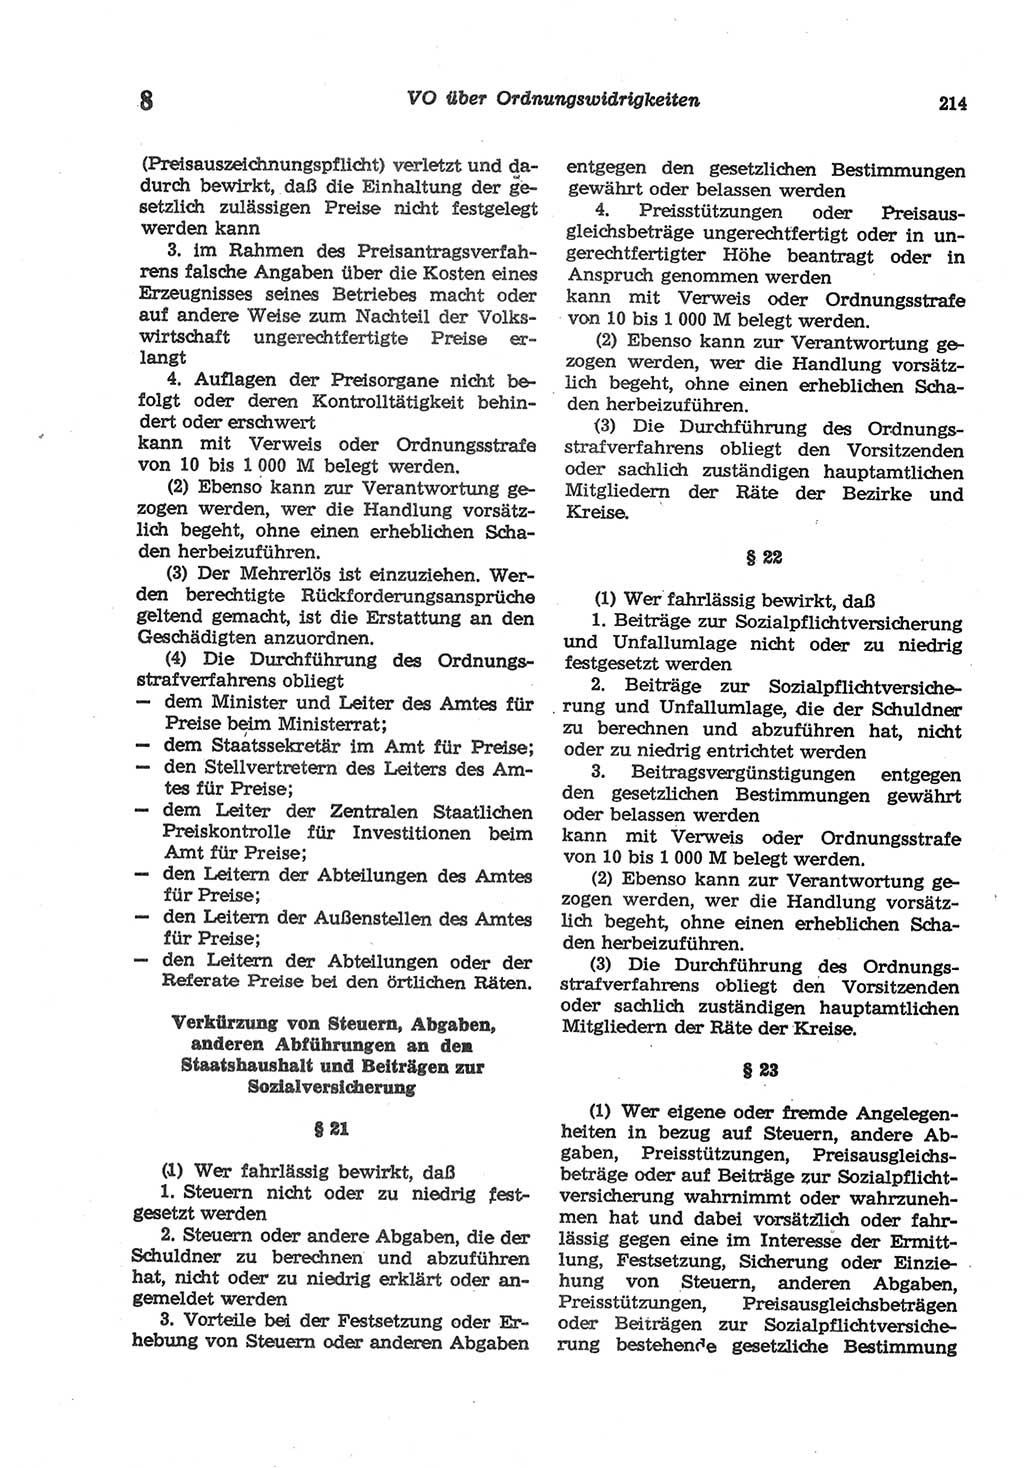 Strafgesetzbuch (StGB) der Deutschen Demokratischen Republik (DDR) und angrenzende Gesetze und Bestimmungen 1977, Seite 214 (StGB DDR Ges. Best. 1977, S. 214)